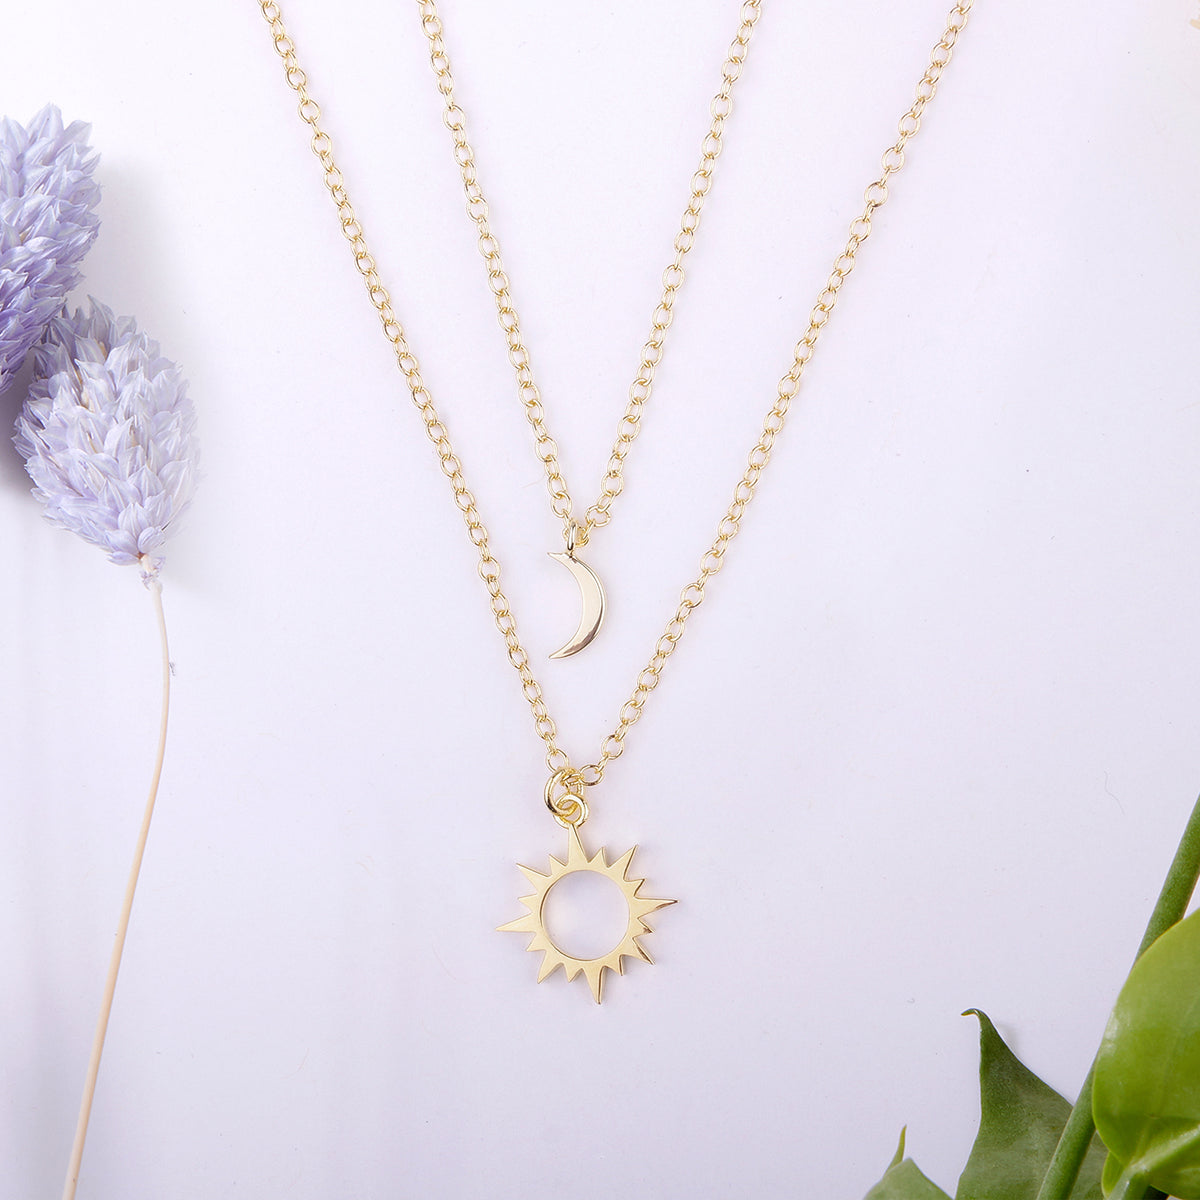 Best Friends Sun and Moon Pendants Necklace Set